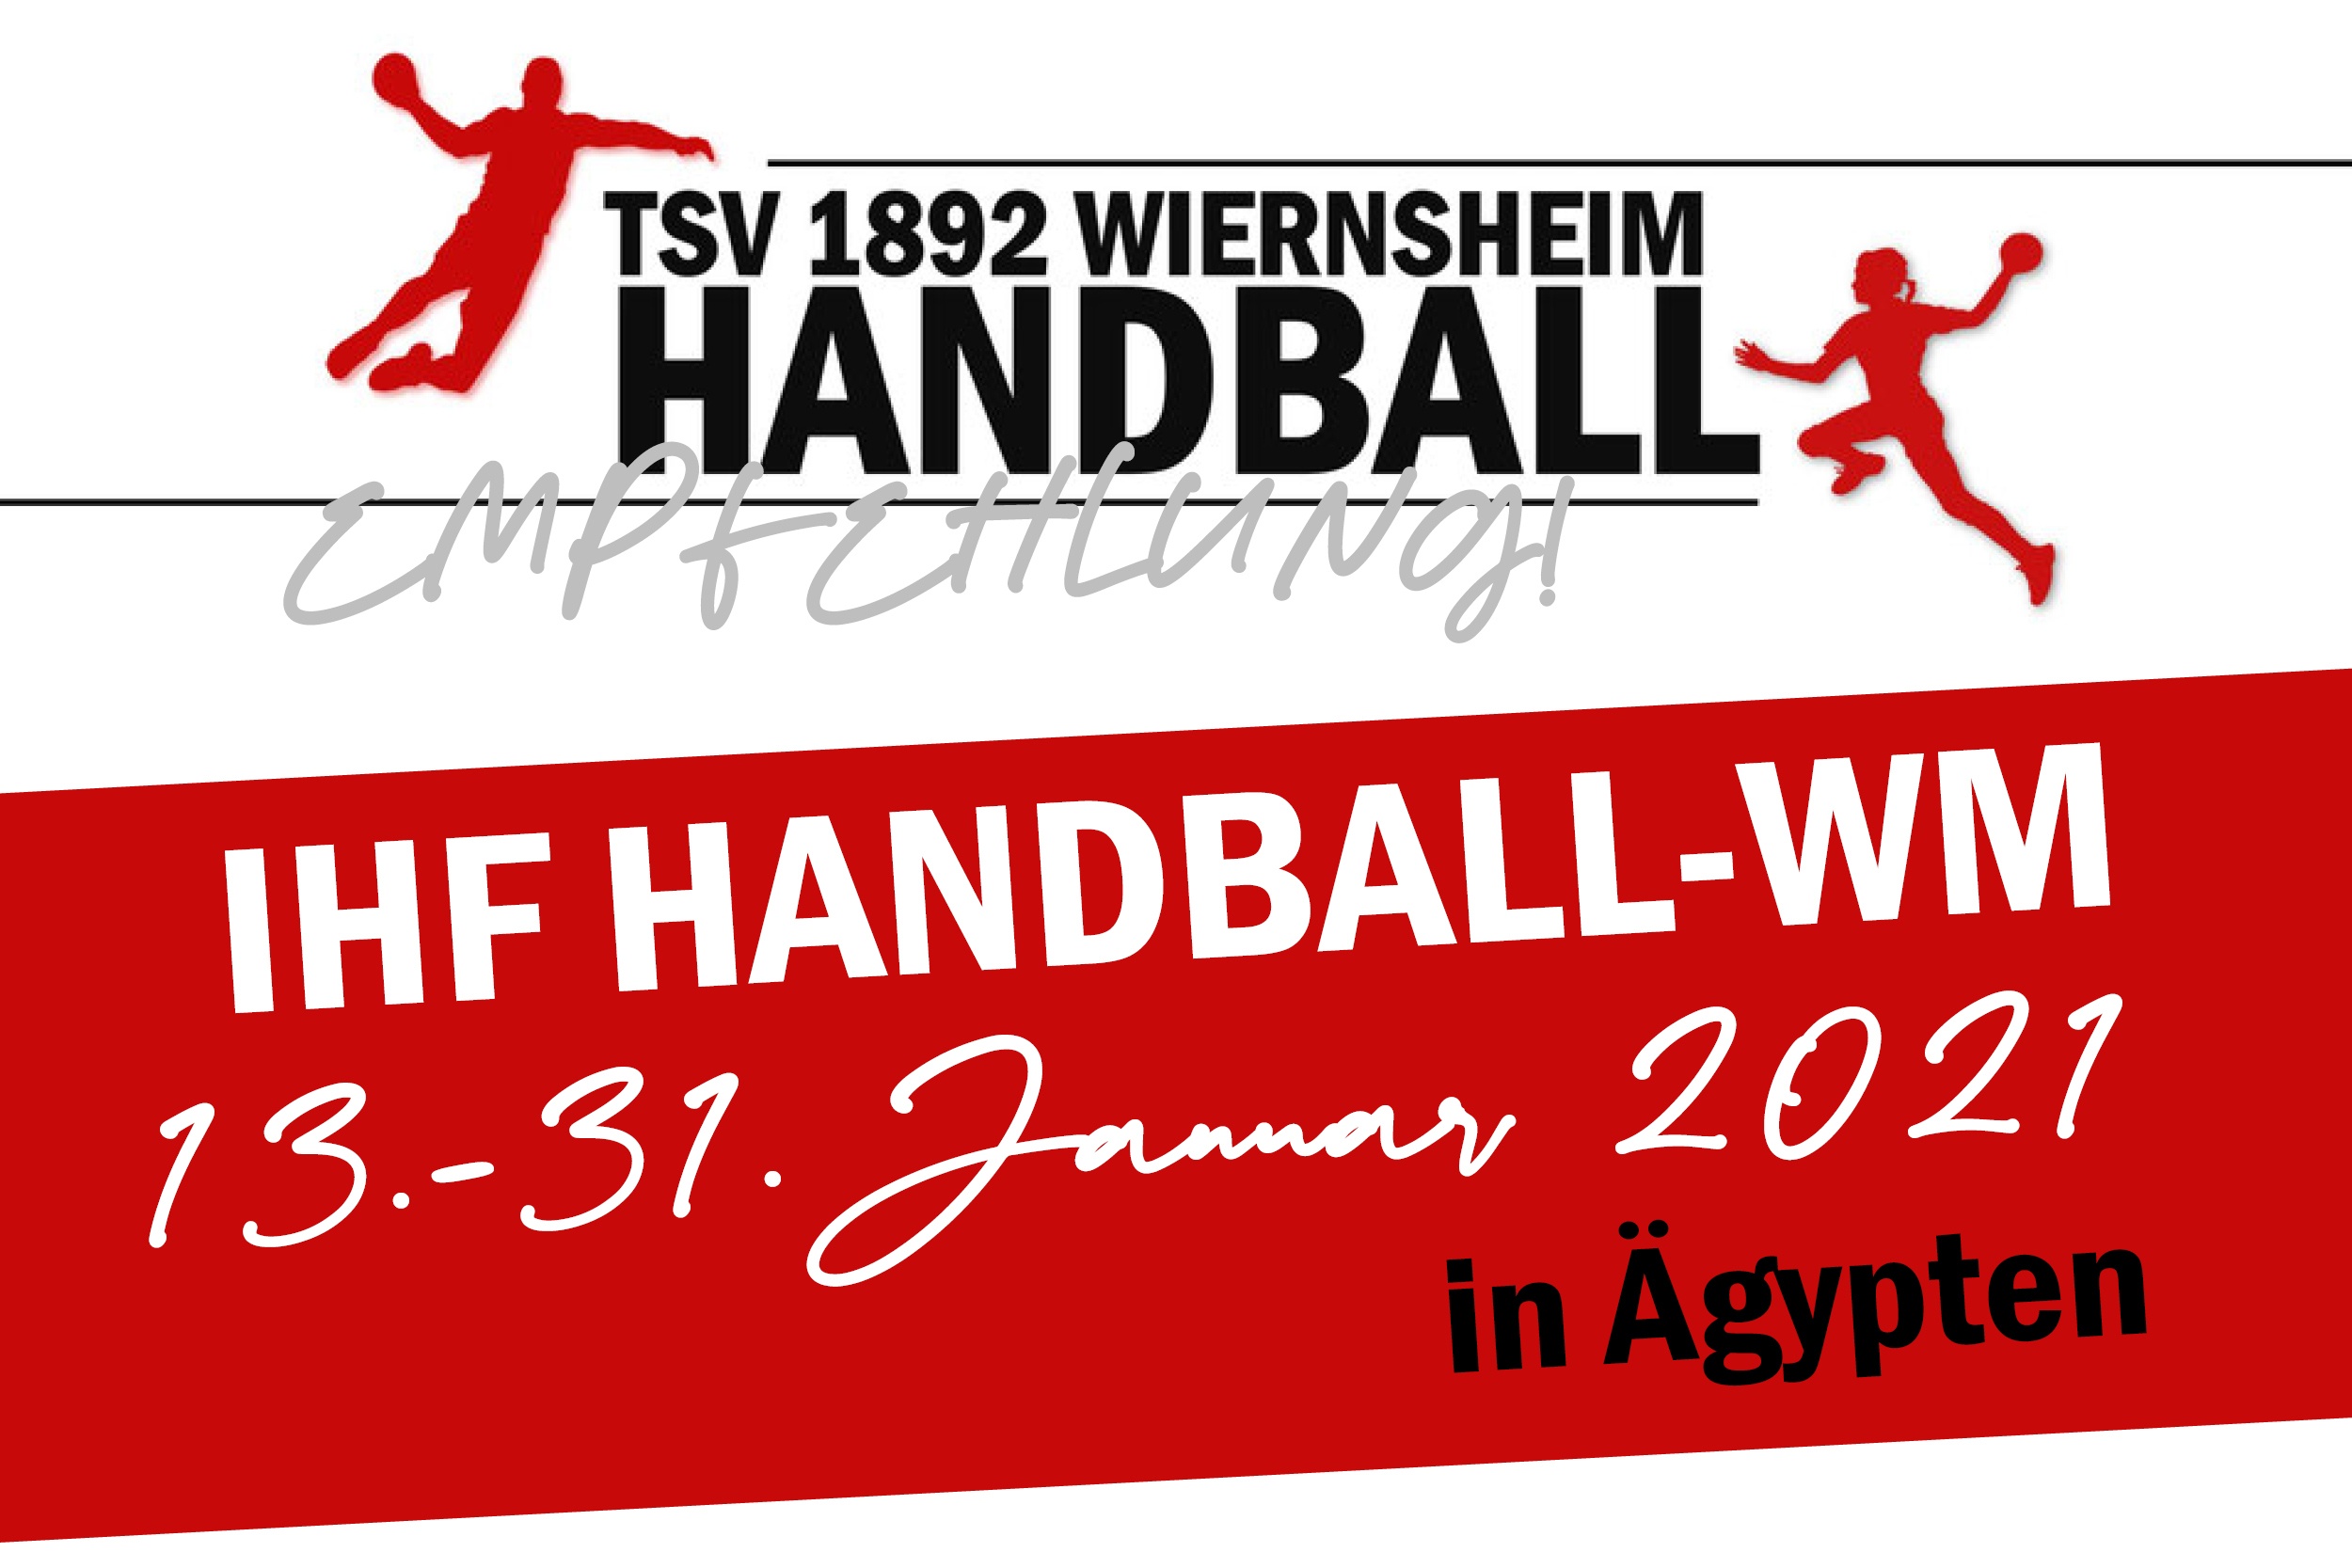 Handball-WM vom 13.-31